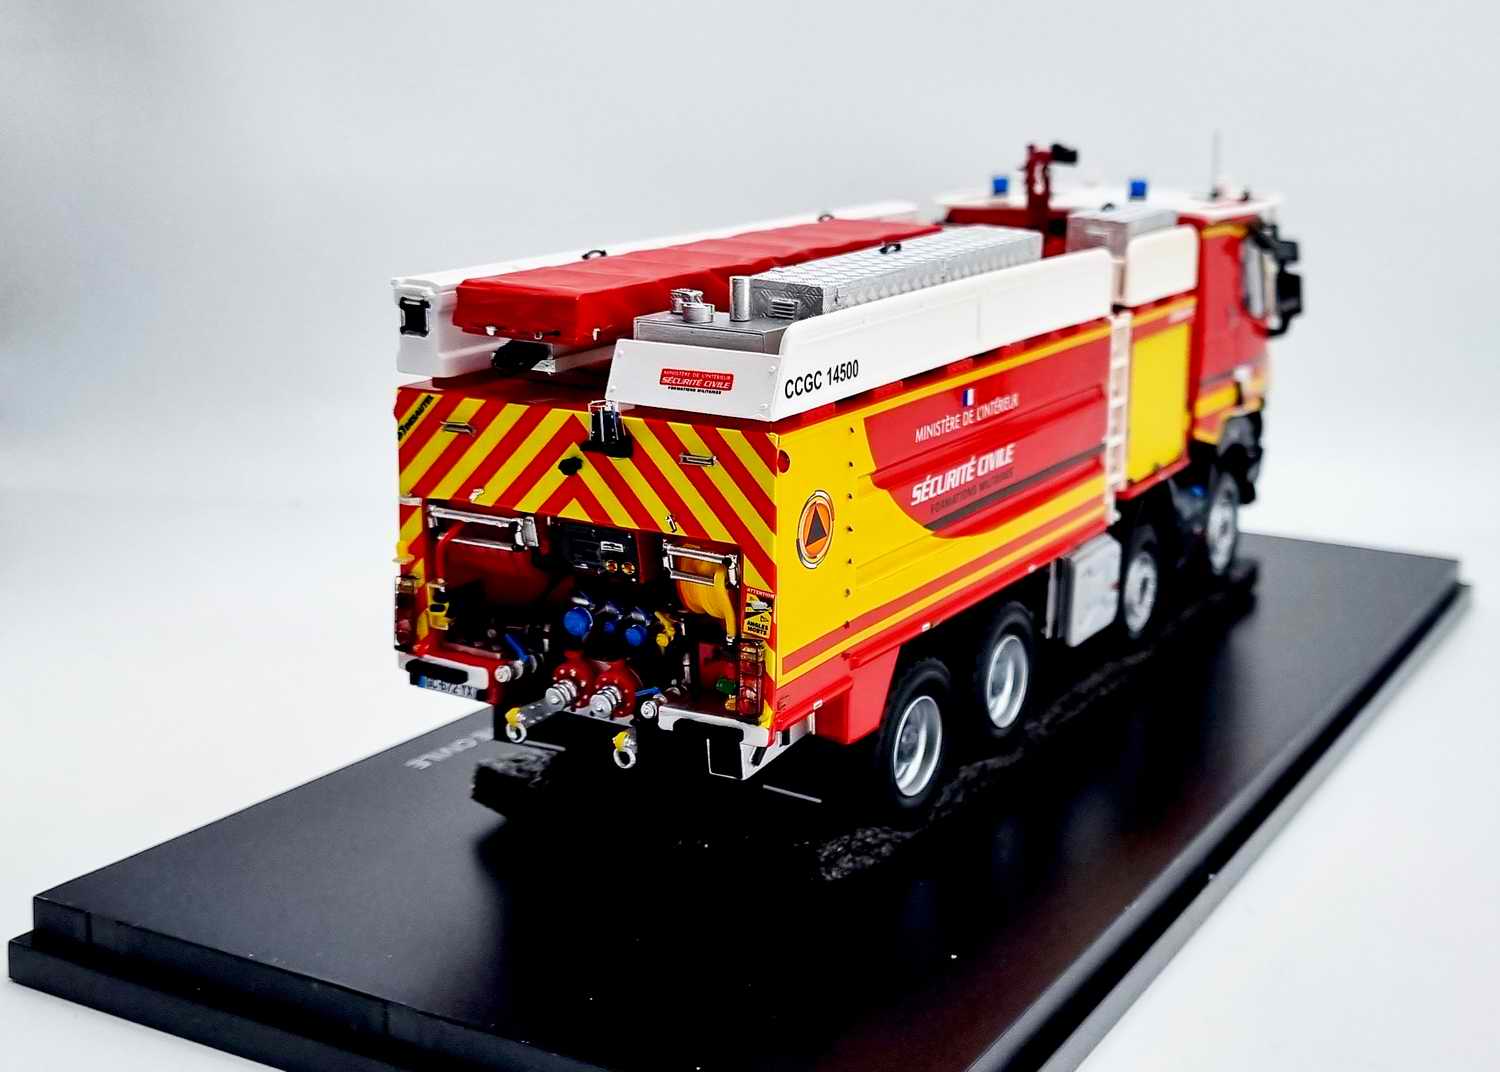 RENAULT K460 Camion de Sapeurs Pompiers CCGC 14500 MINISTÈRE DE L'INTÉRIEUR Desautel Sécurité Civile 1/43 Alerte